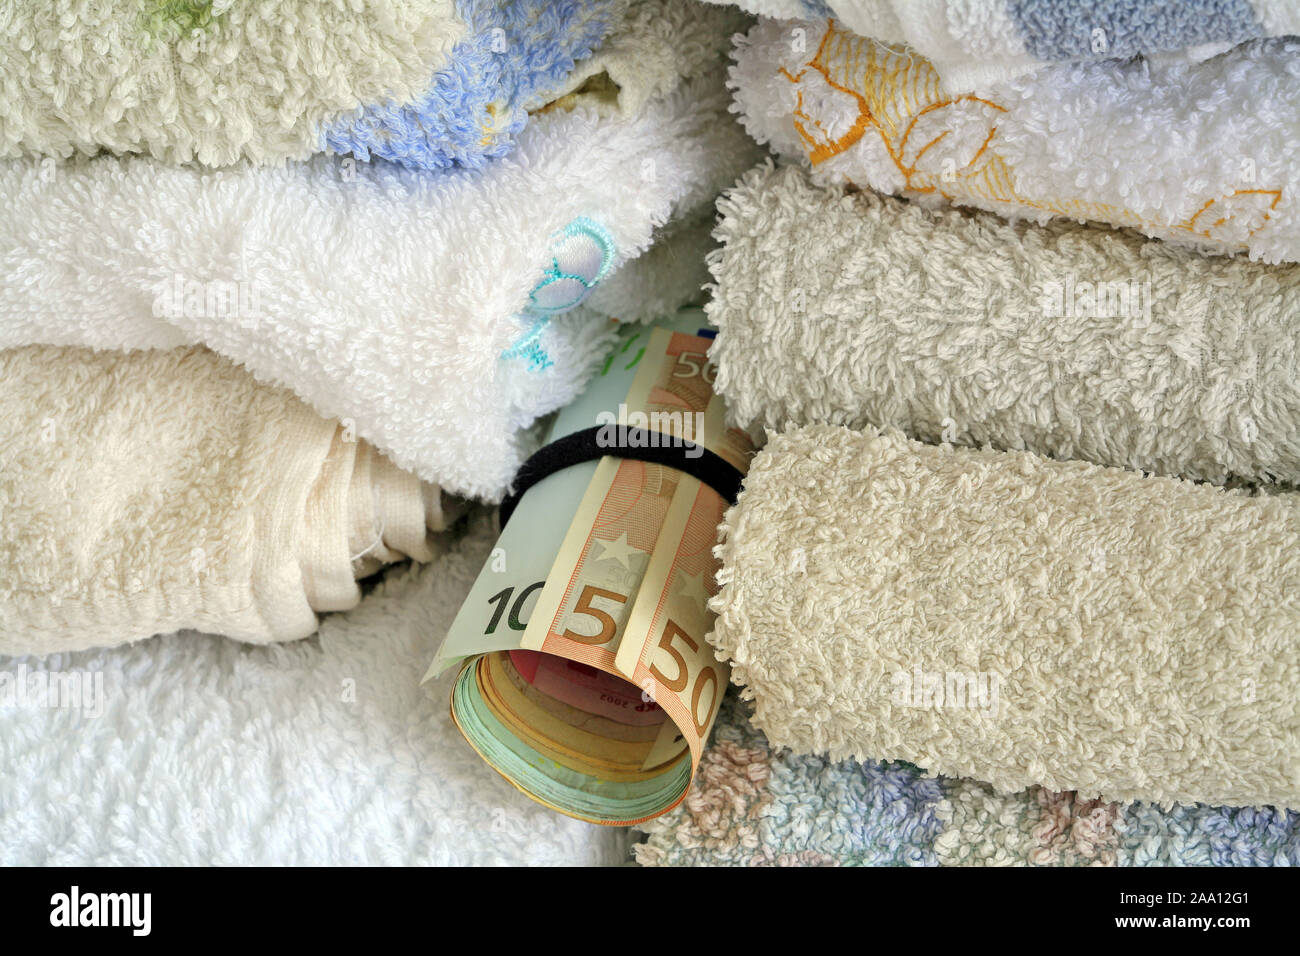 Geldversteck zwischen der Wäsche / Money hiding place between the clothes Stock Photo